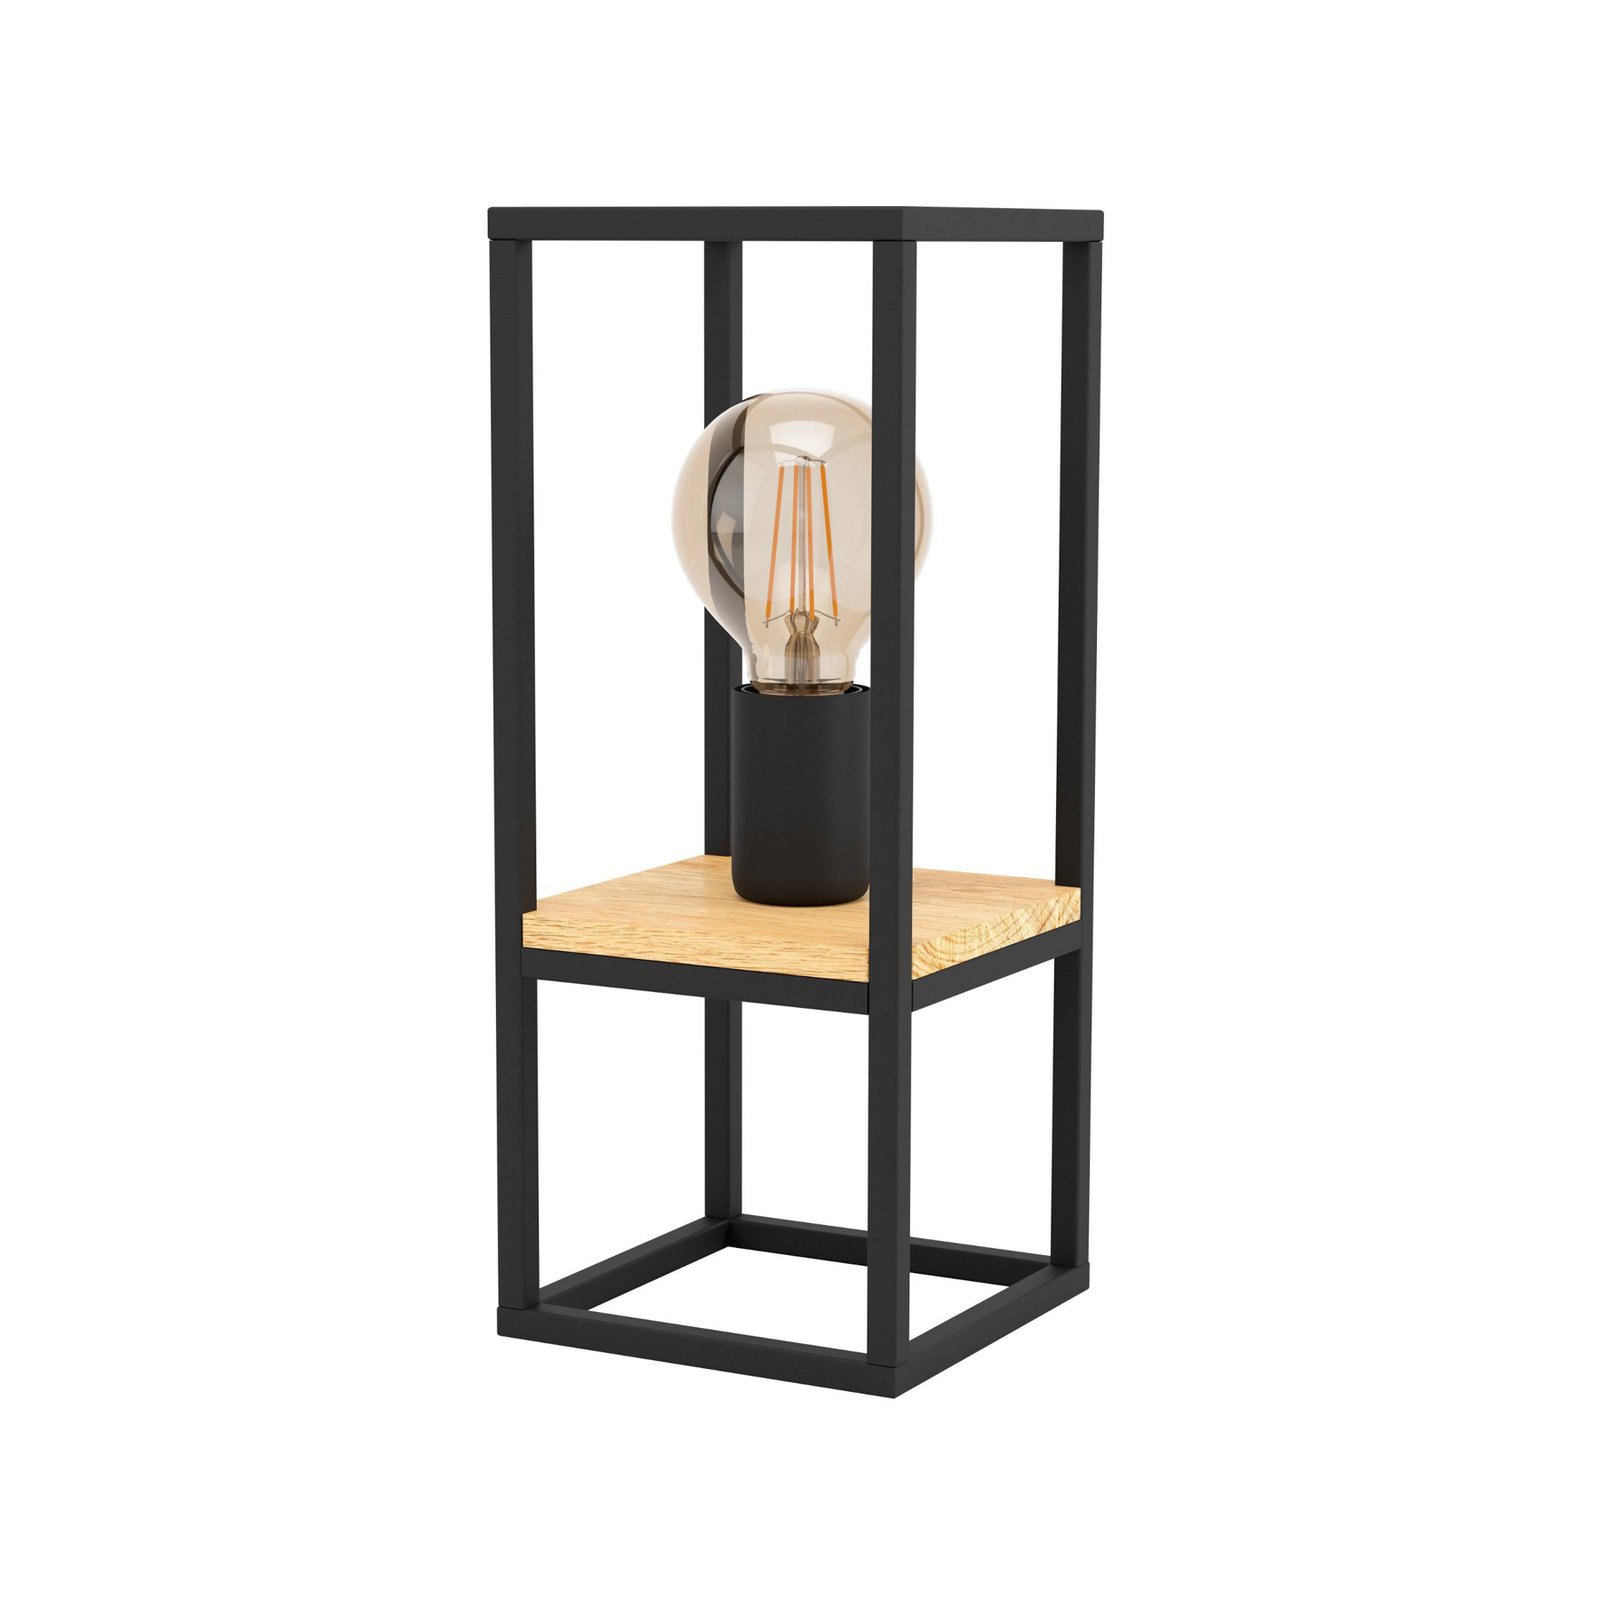 Tafellamp Libertad, hoogte 35 cm, zwart/hout, staal